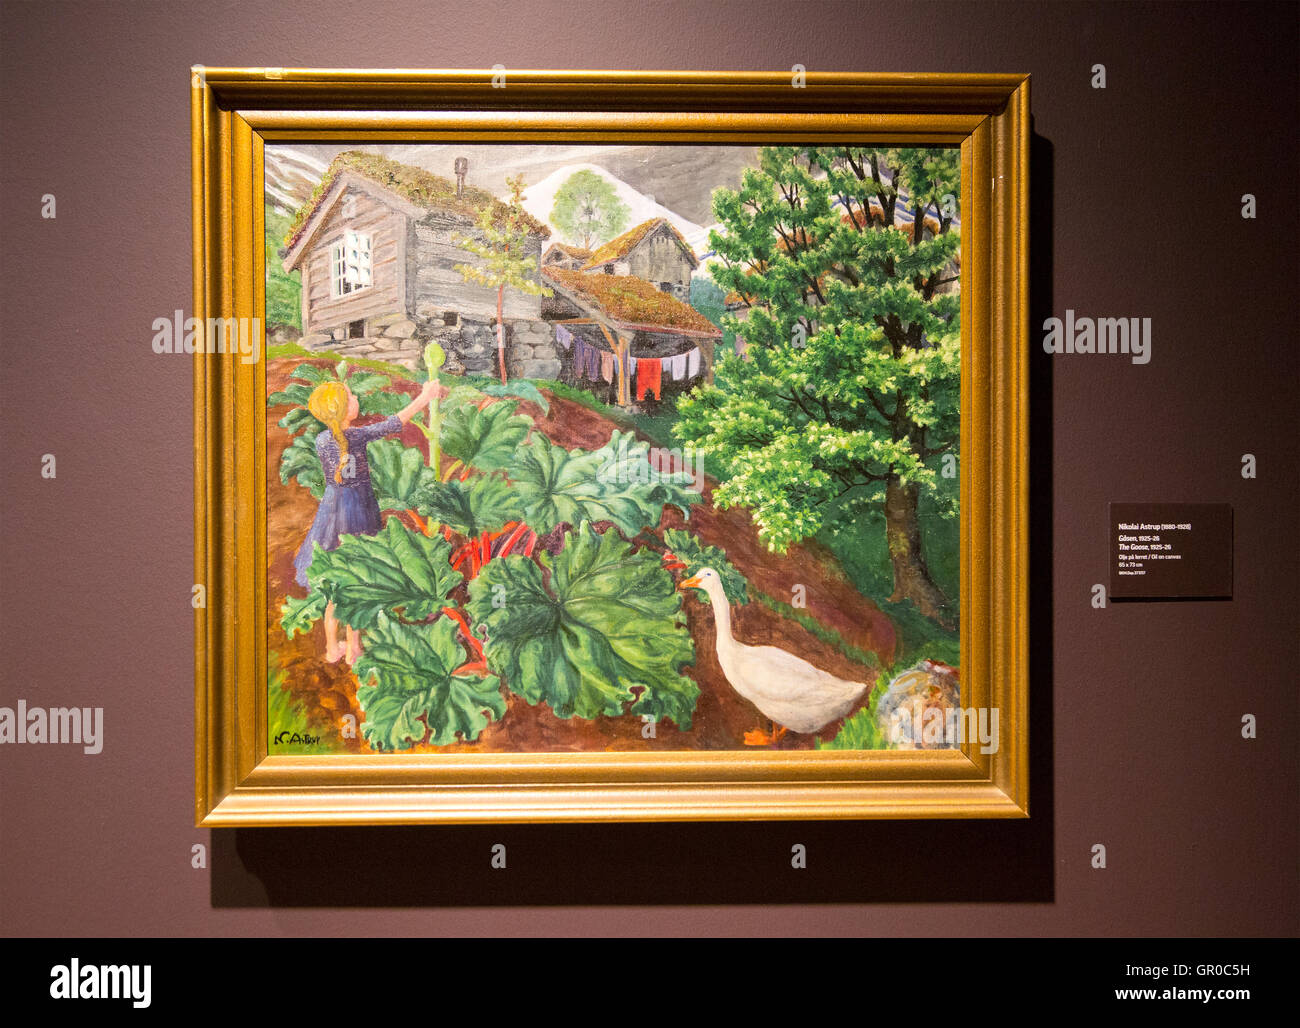 'Les oies' 1925-1926 huile sur toile par Nikolaï Astrup 1880-1928, Kode 4 art gallery Bergen, Norvège Banque D'Images